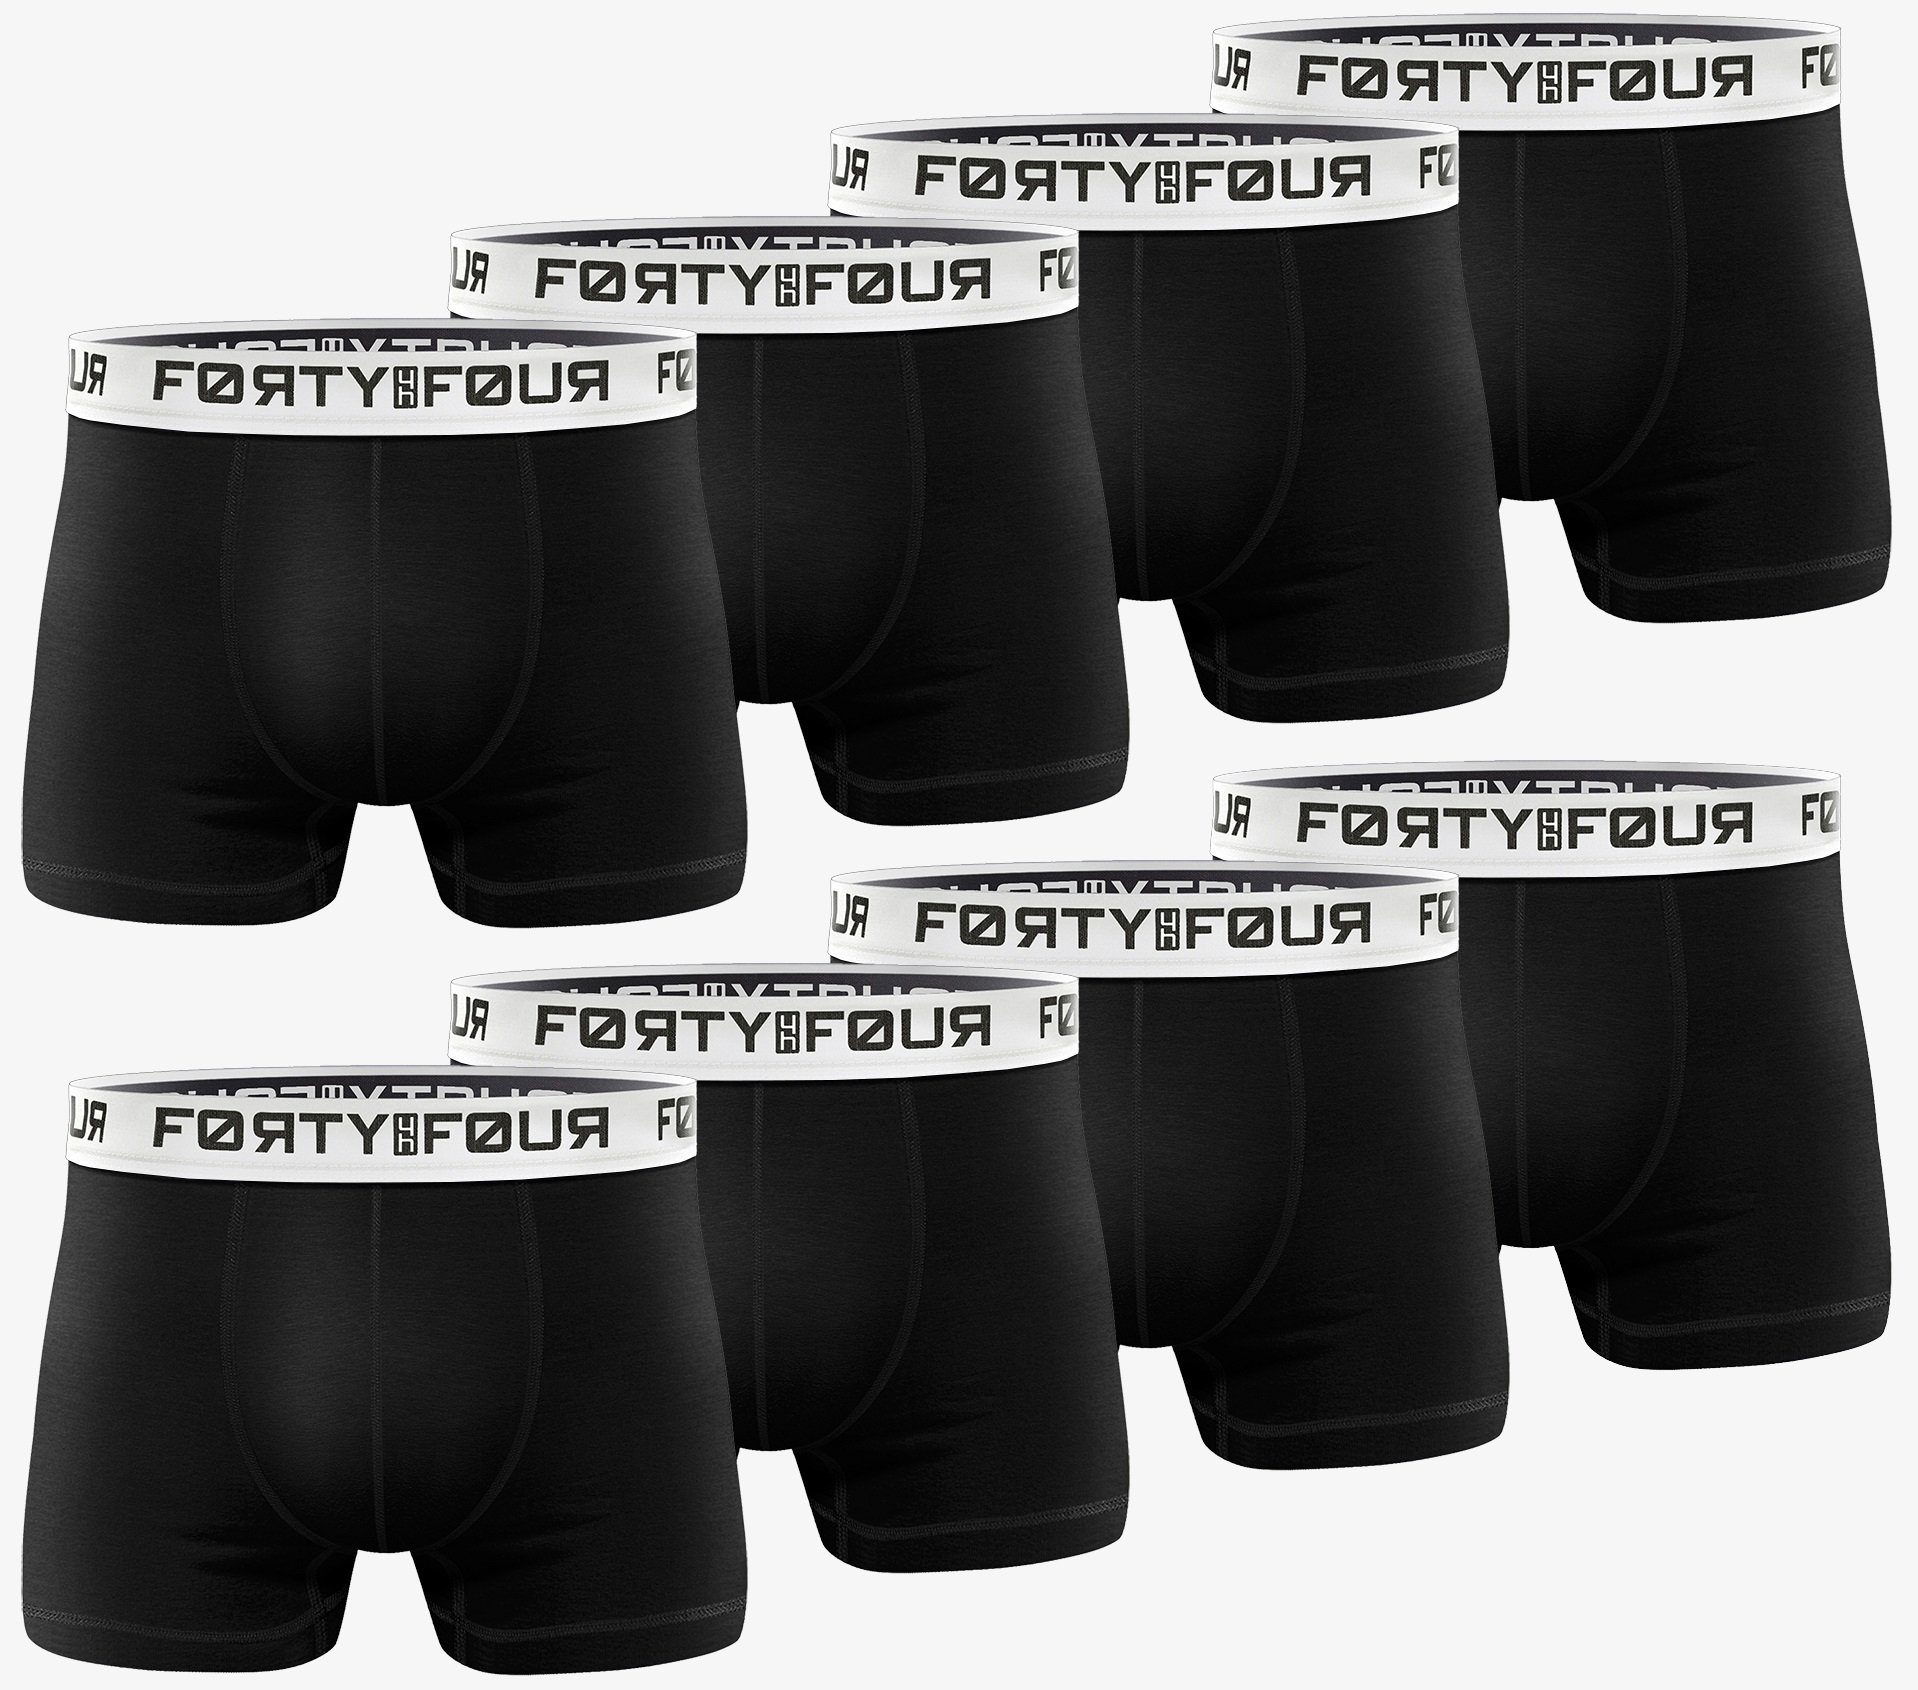 FortyFour Boxershorts Herren Männer Unterhosen Baumwolle Premium Qualität perfekte Passform (Vorteilspack, 8er Pack) S - 7XL 715b-schwarz